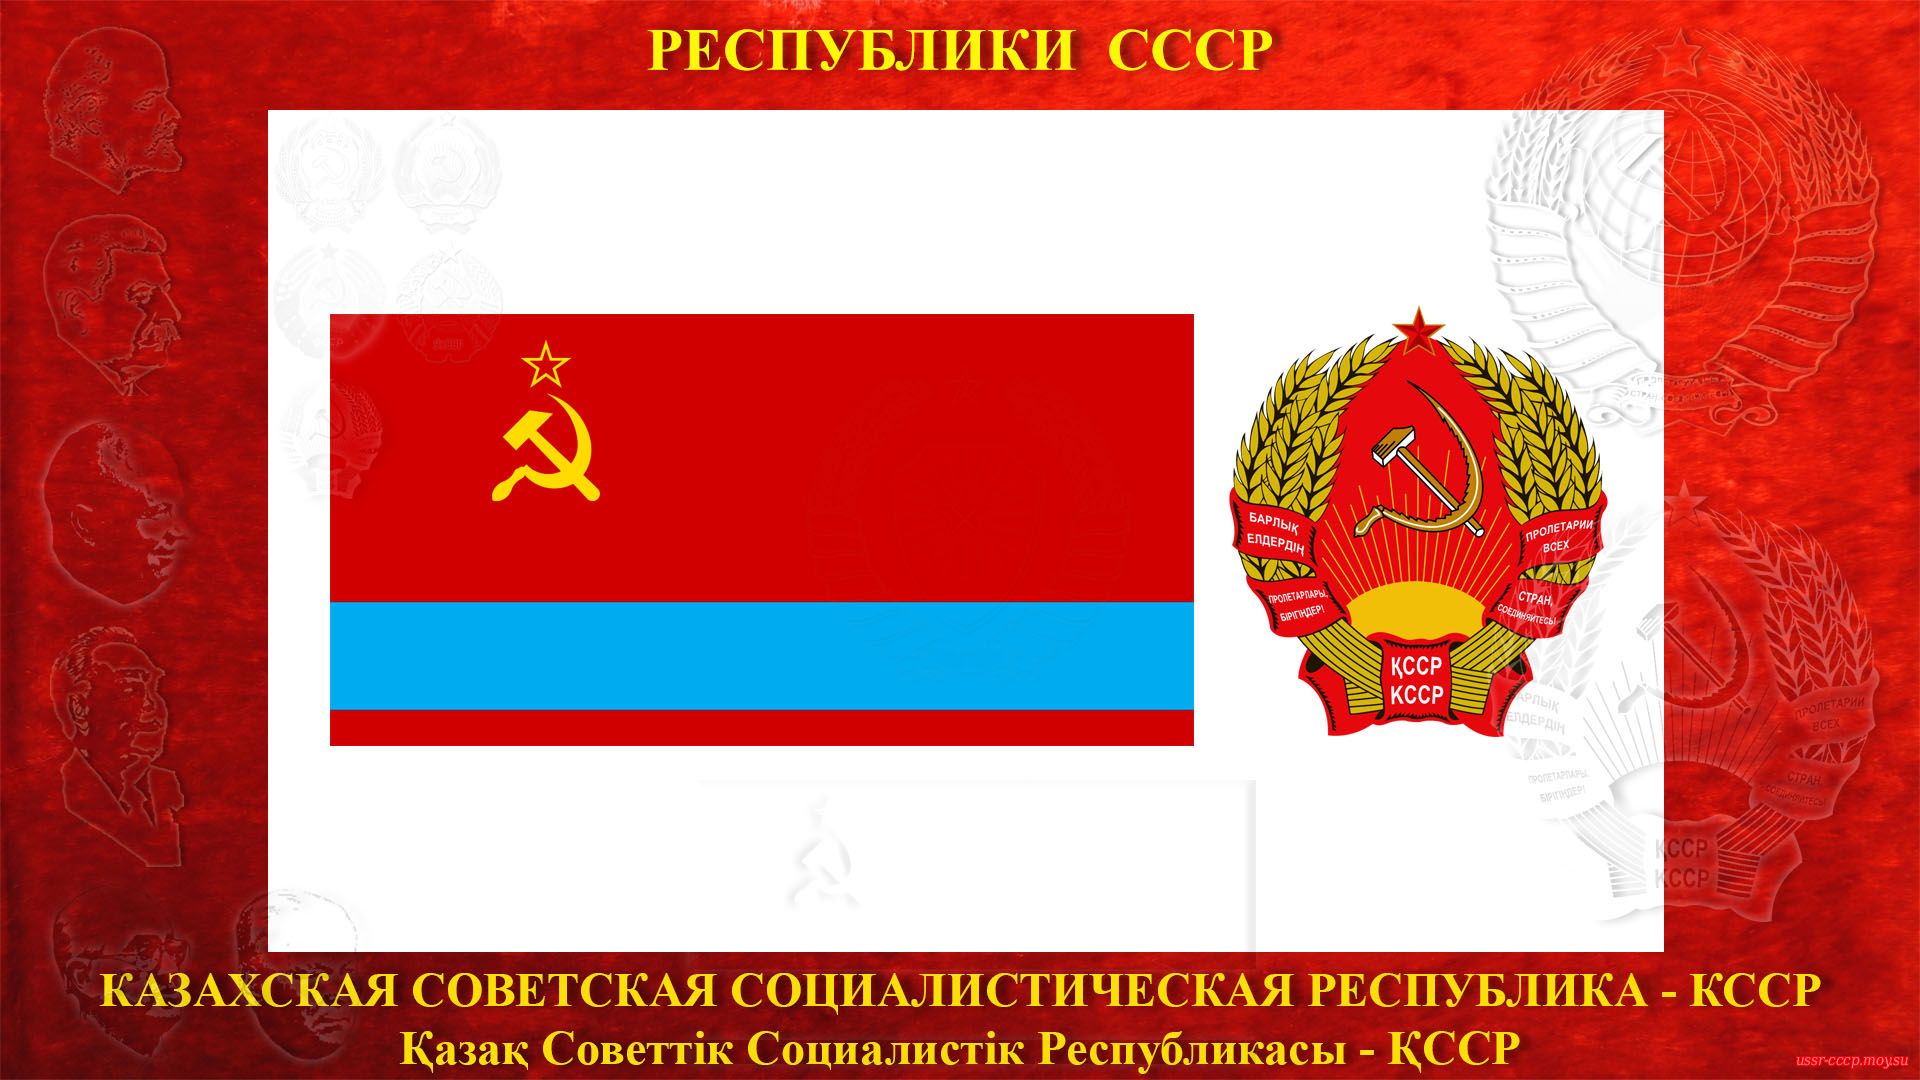 КССР — Казахская Советская Социалистическая Республика (05.12.1936 — де-юре)